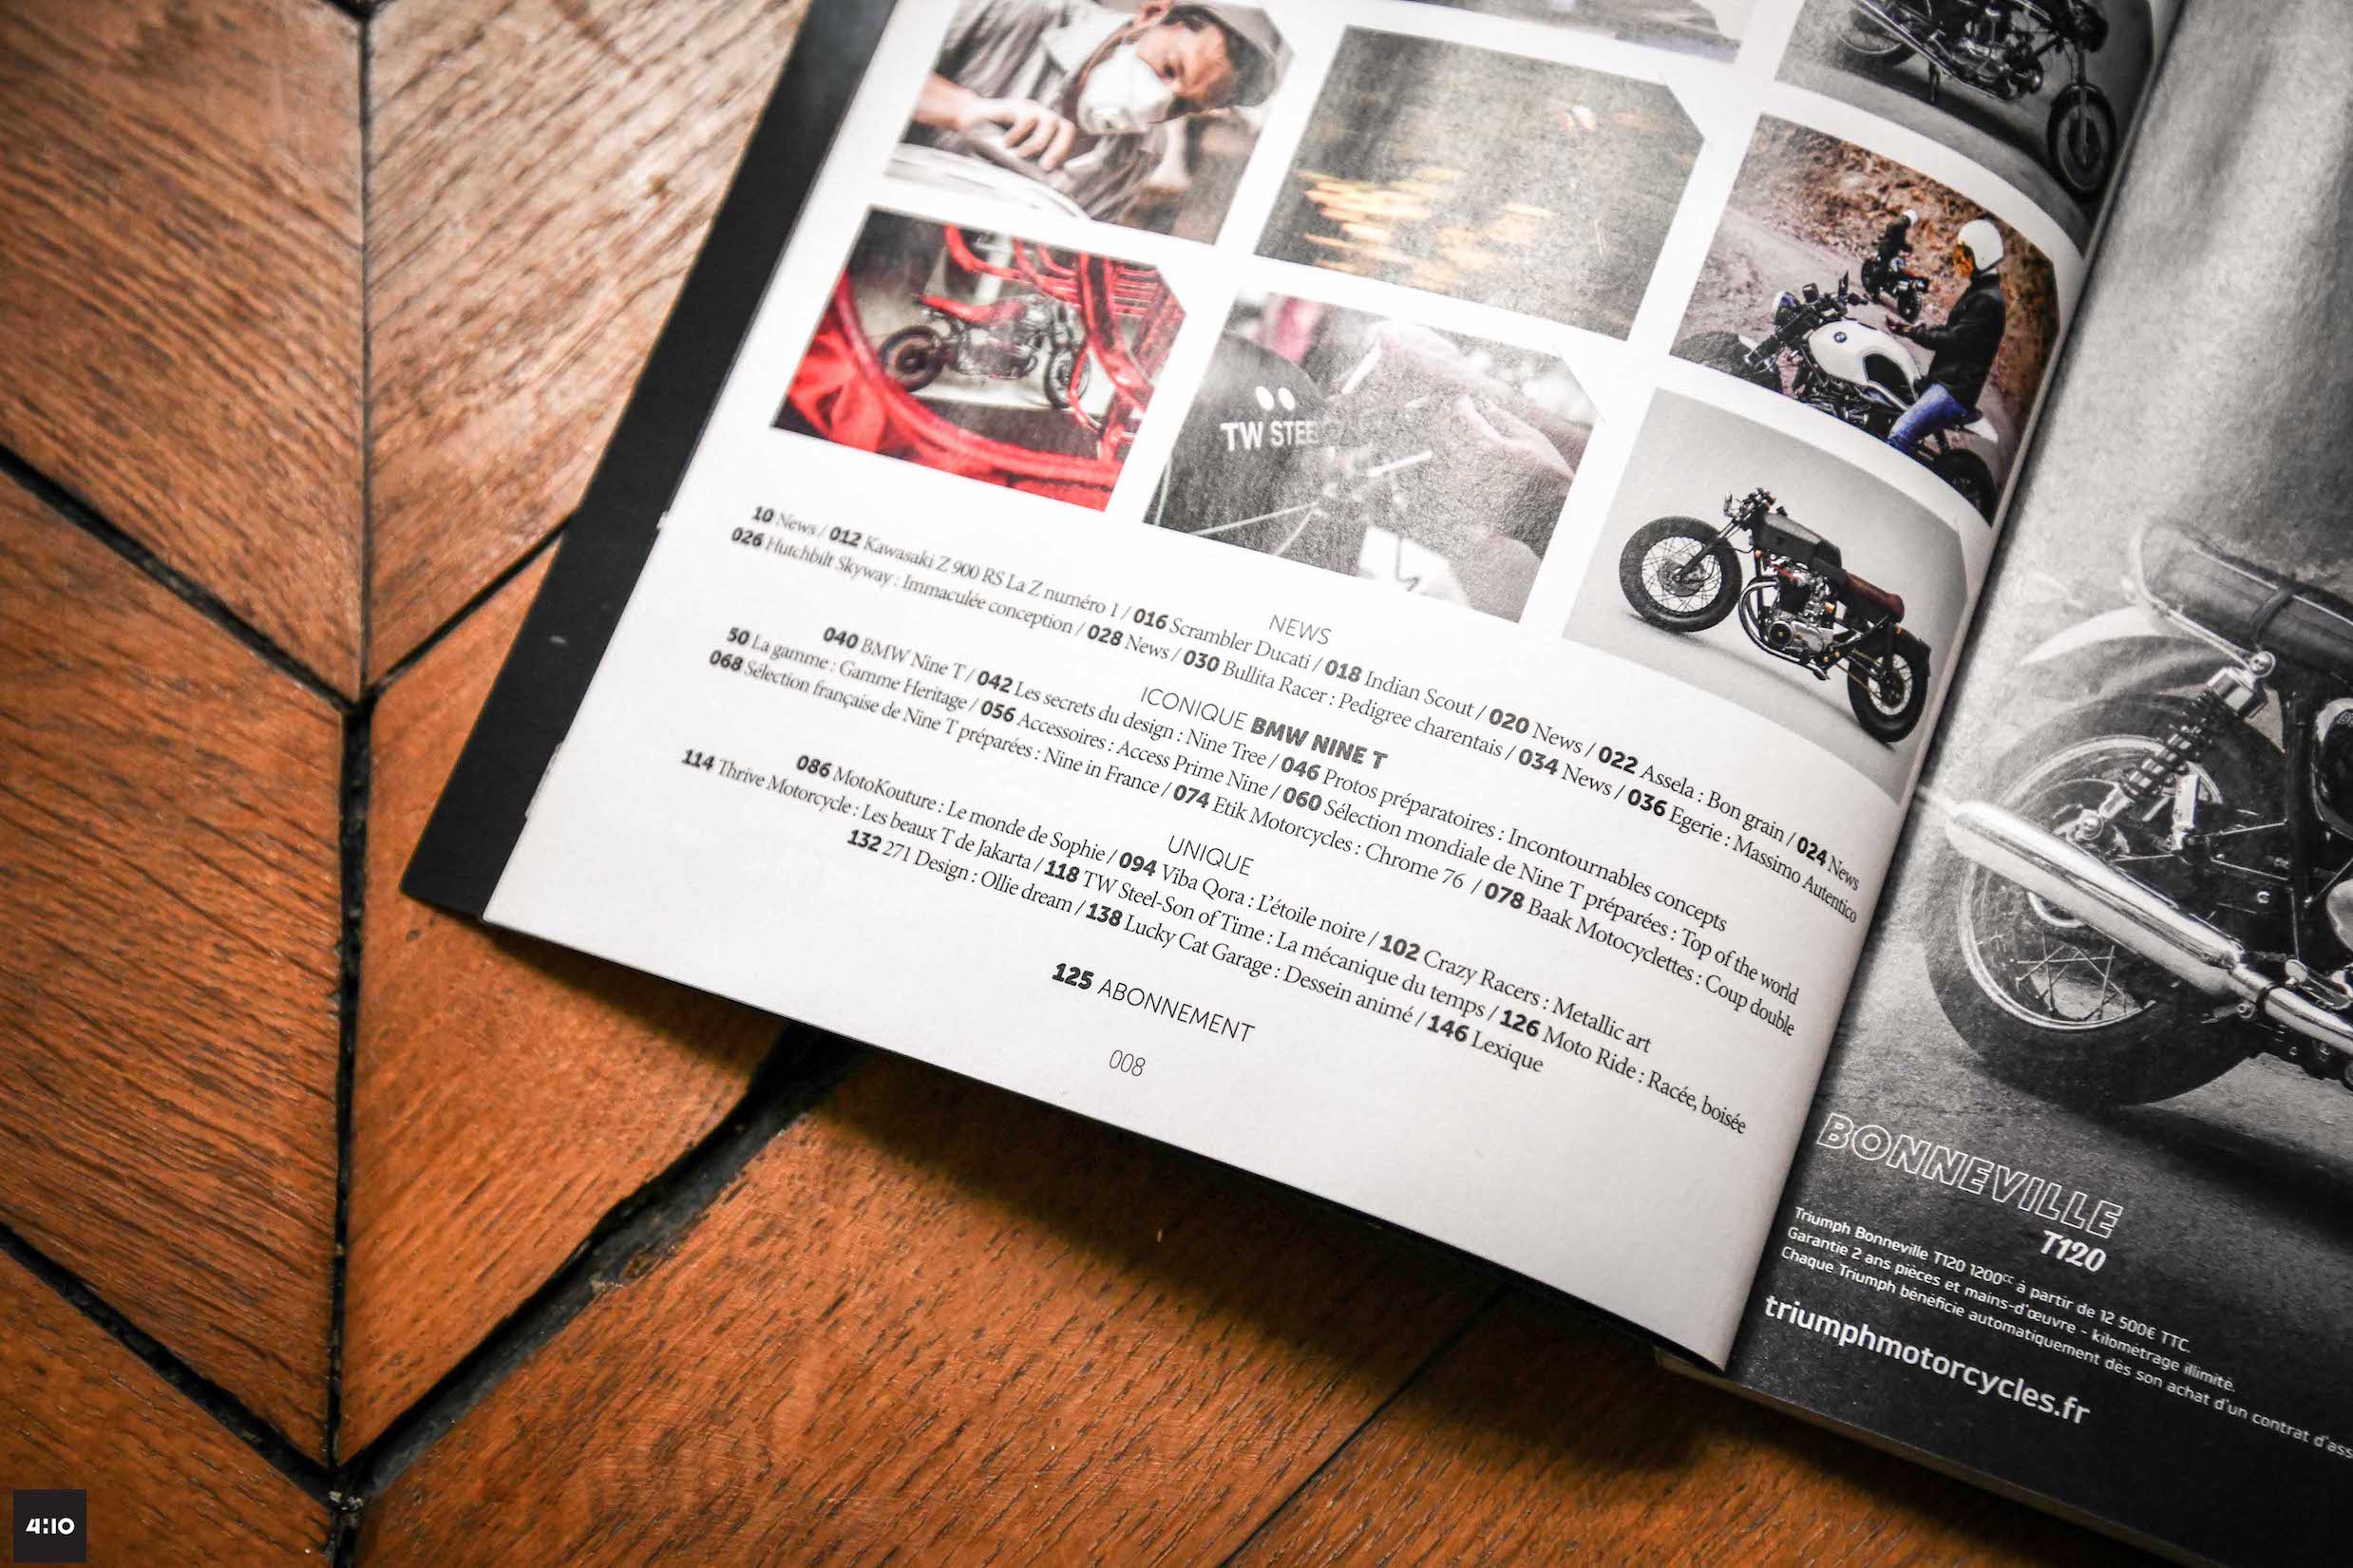 petrol head moto heroes 6 pack publishing fabrice roux magazine moto vintage